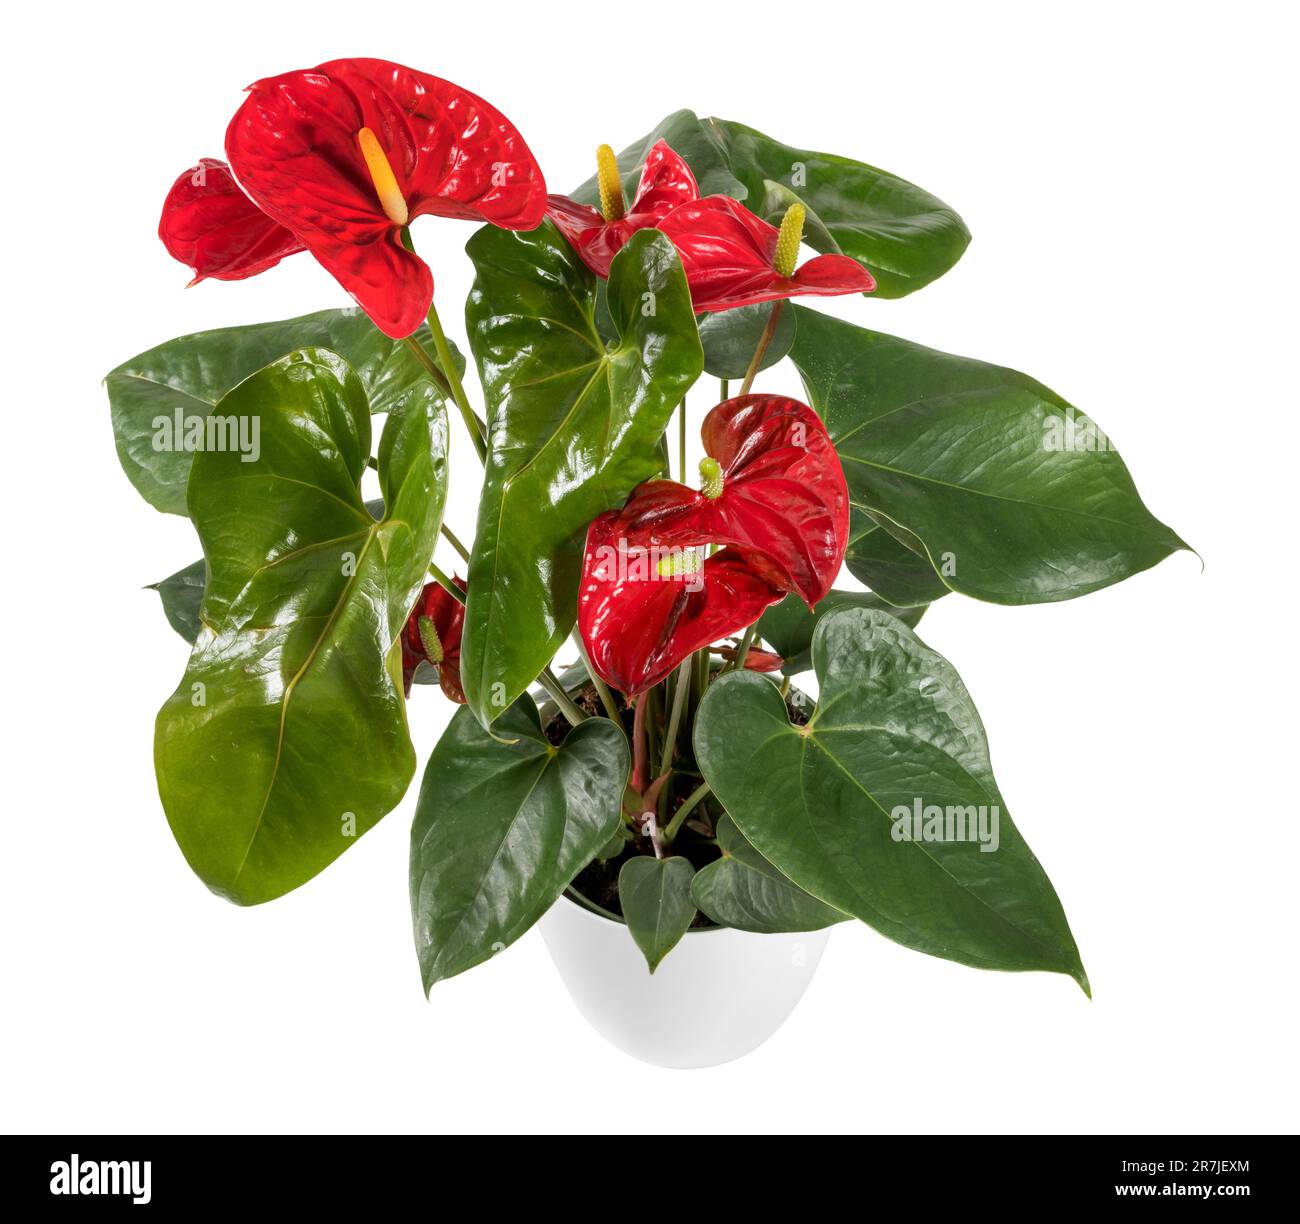 Dall'alto di fiori di coda in vaso con foglie verdi e germogli rossi isolati su sfondo bianco Foto Stock